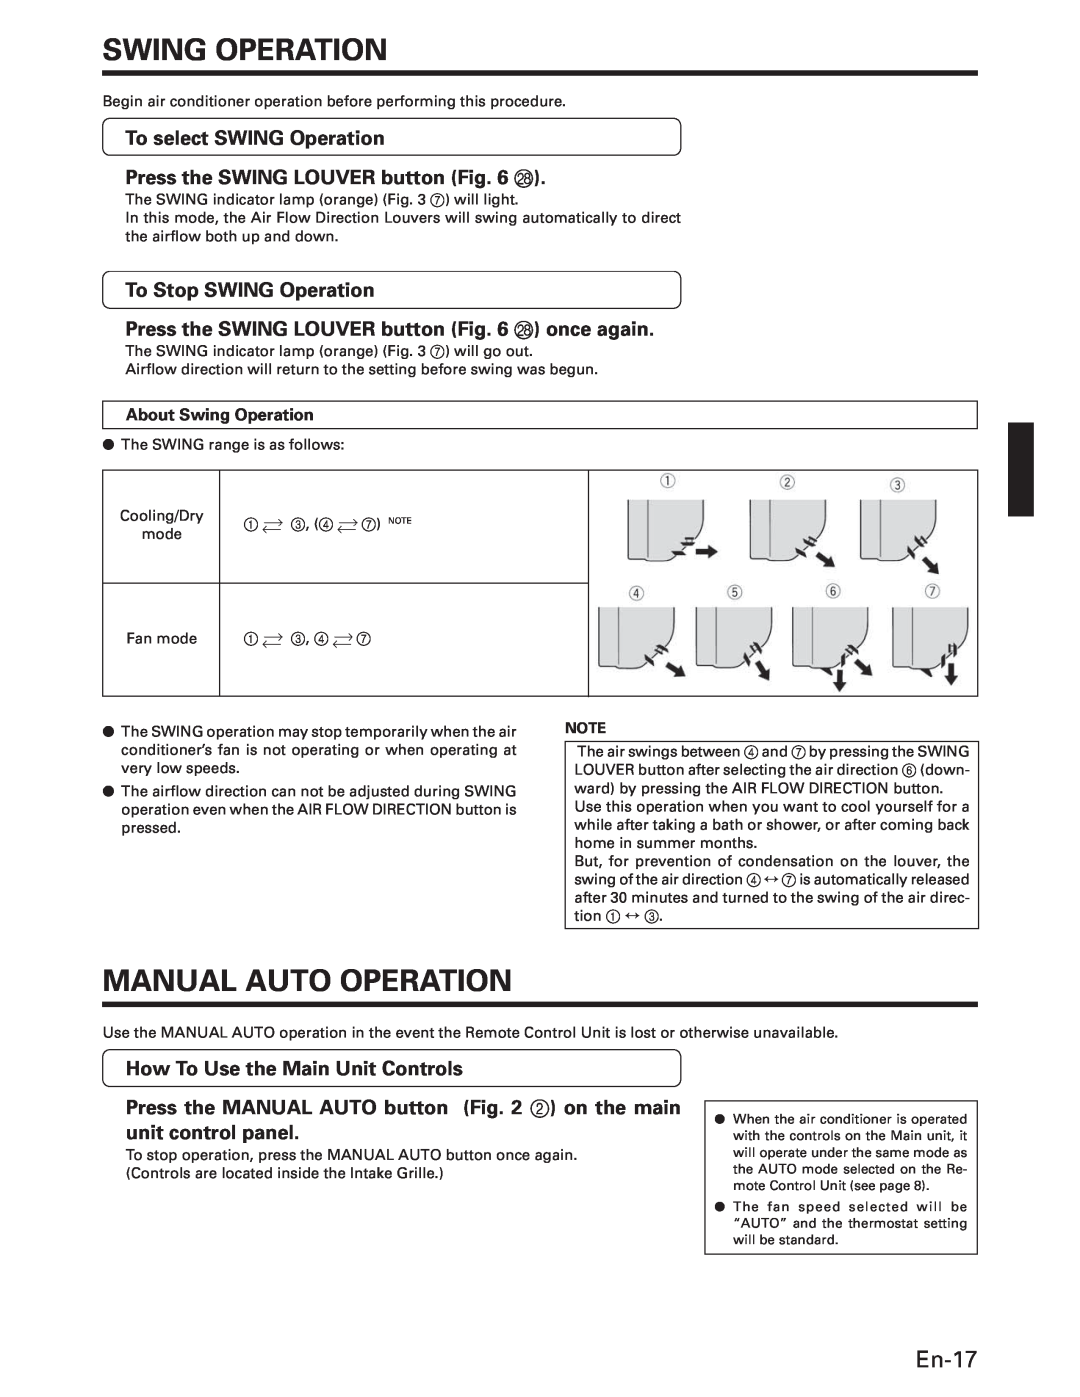 Fujitsu ASU18T Swing Operation, Manual Auto Operation, En-17, To select SWING Operation, Press the SWING LOUVER button R 